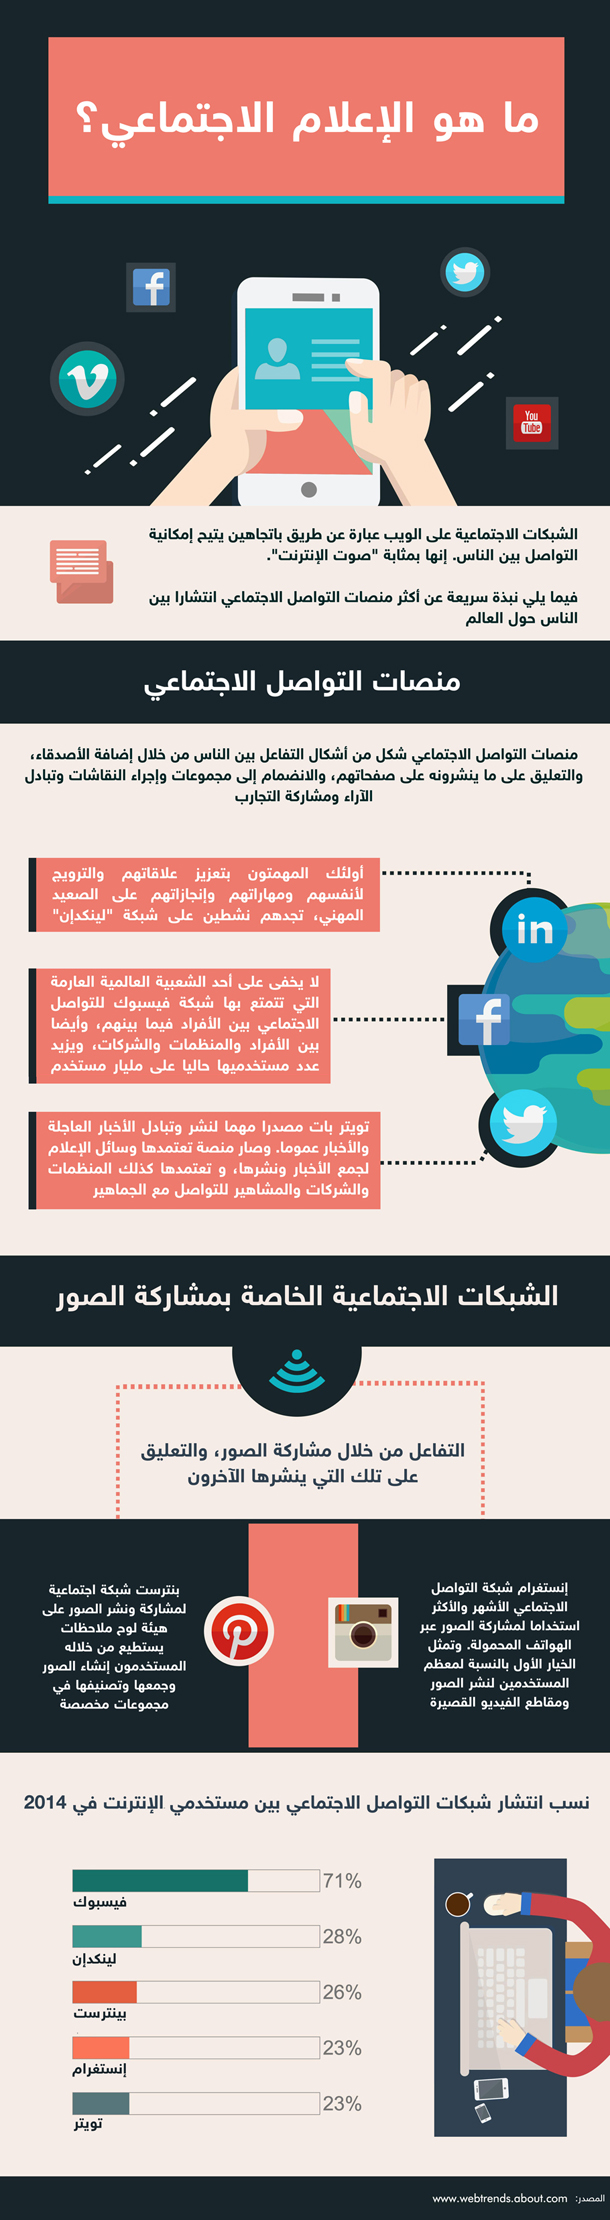 social media landscape in 2014